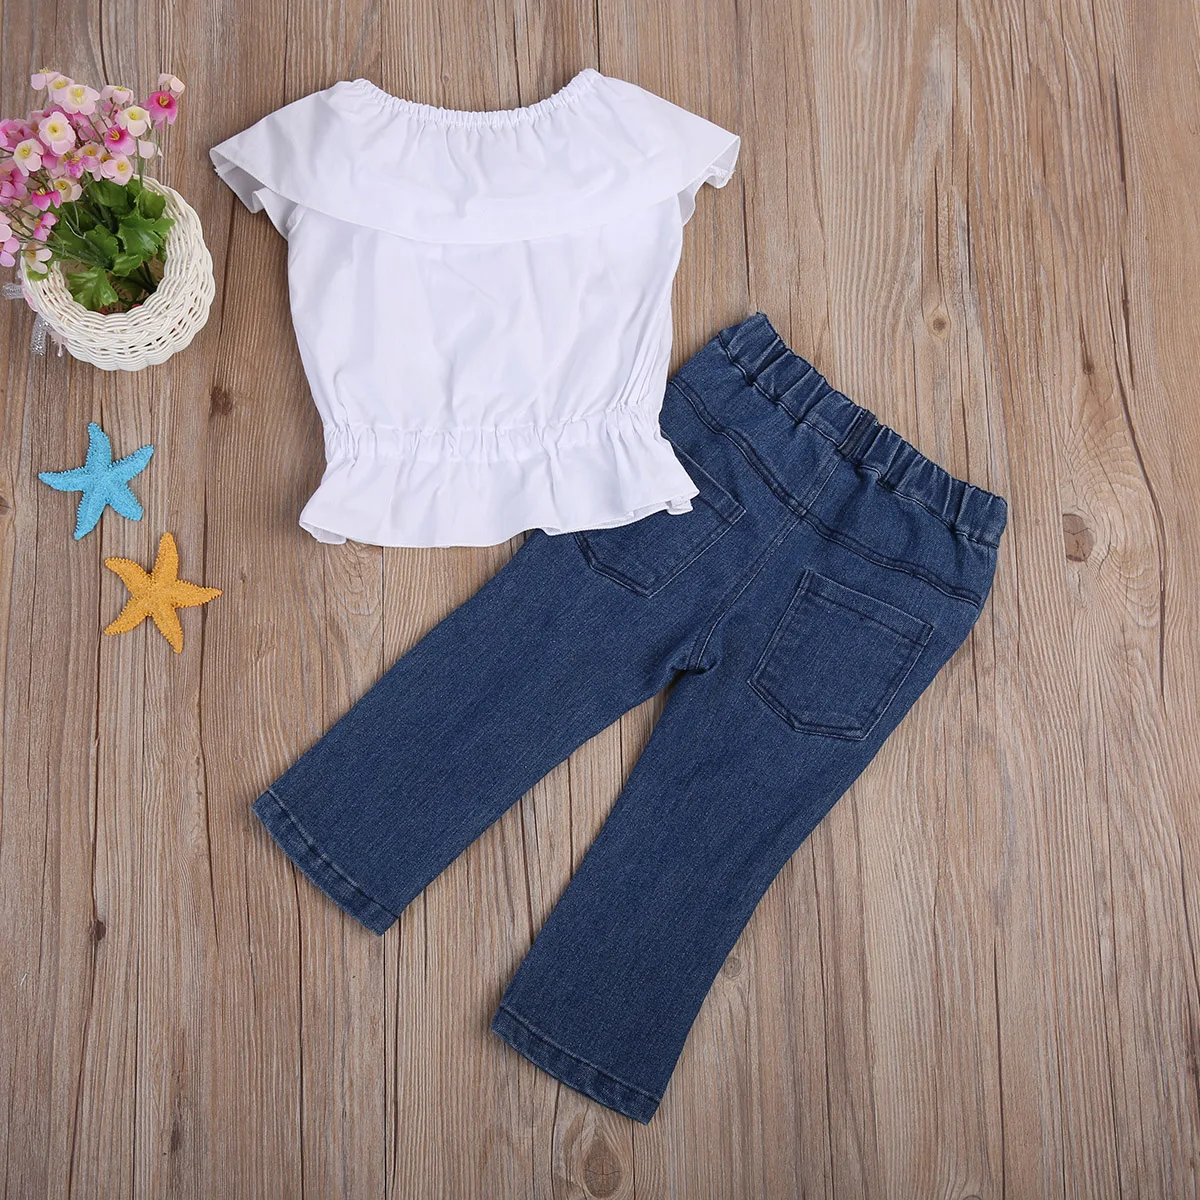 Комплект одежды для девочек штаны с вырезами белый укороченный топ майка